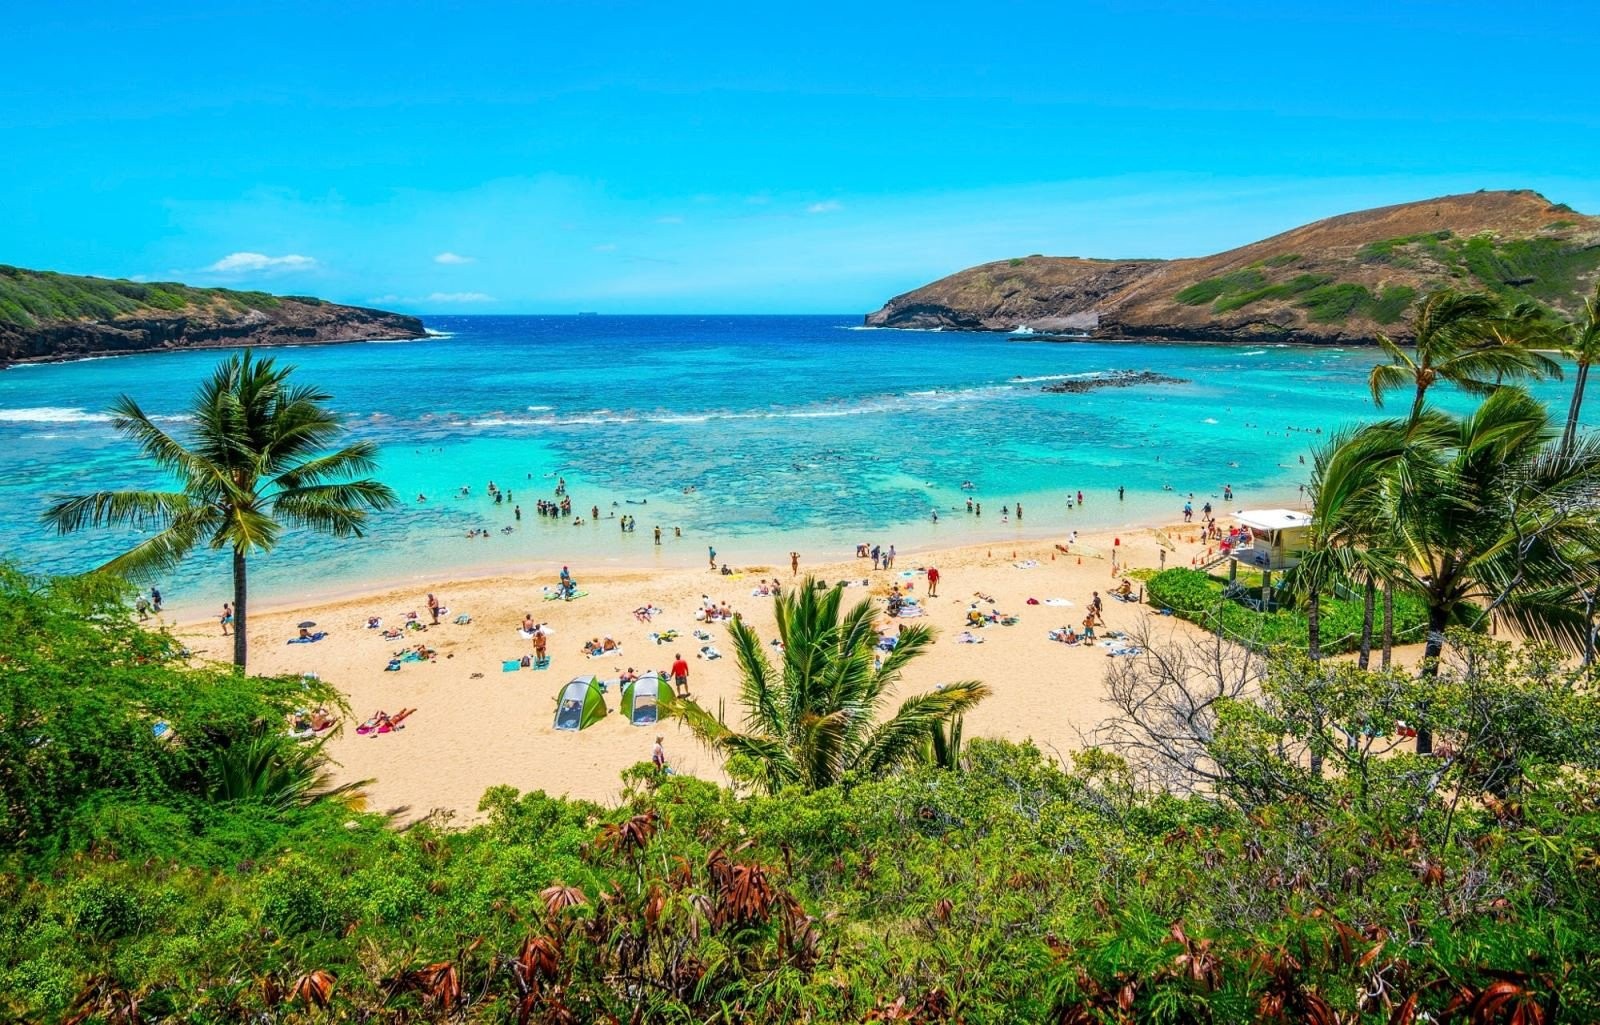 Đảo Hawaii có bãi biển cát trắng mịn, làn nước xanh trong vắt, và cảnh quan hùng vĩ